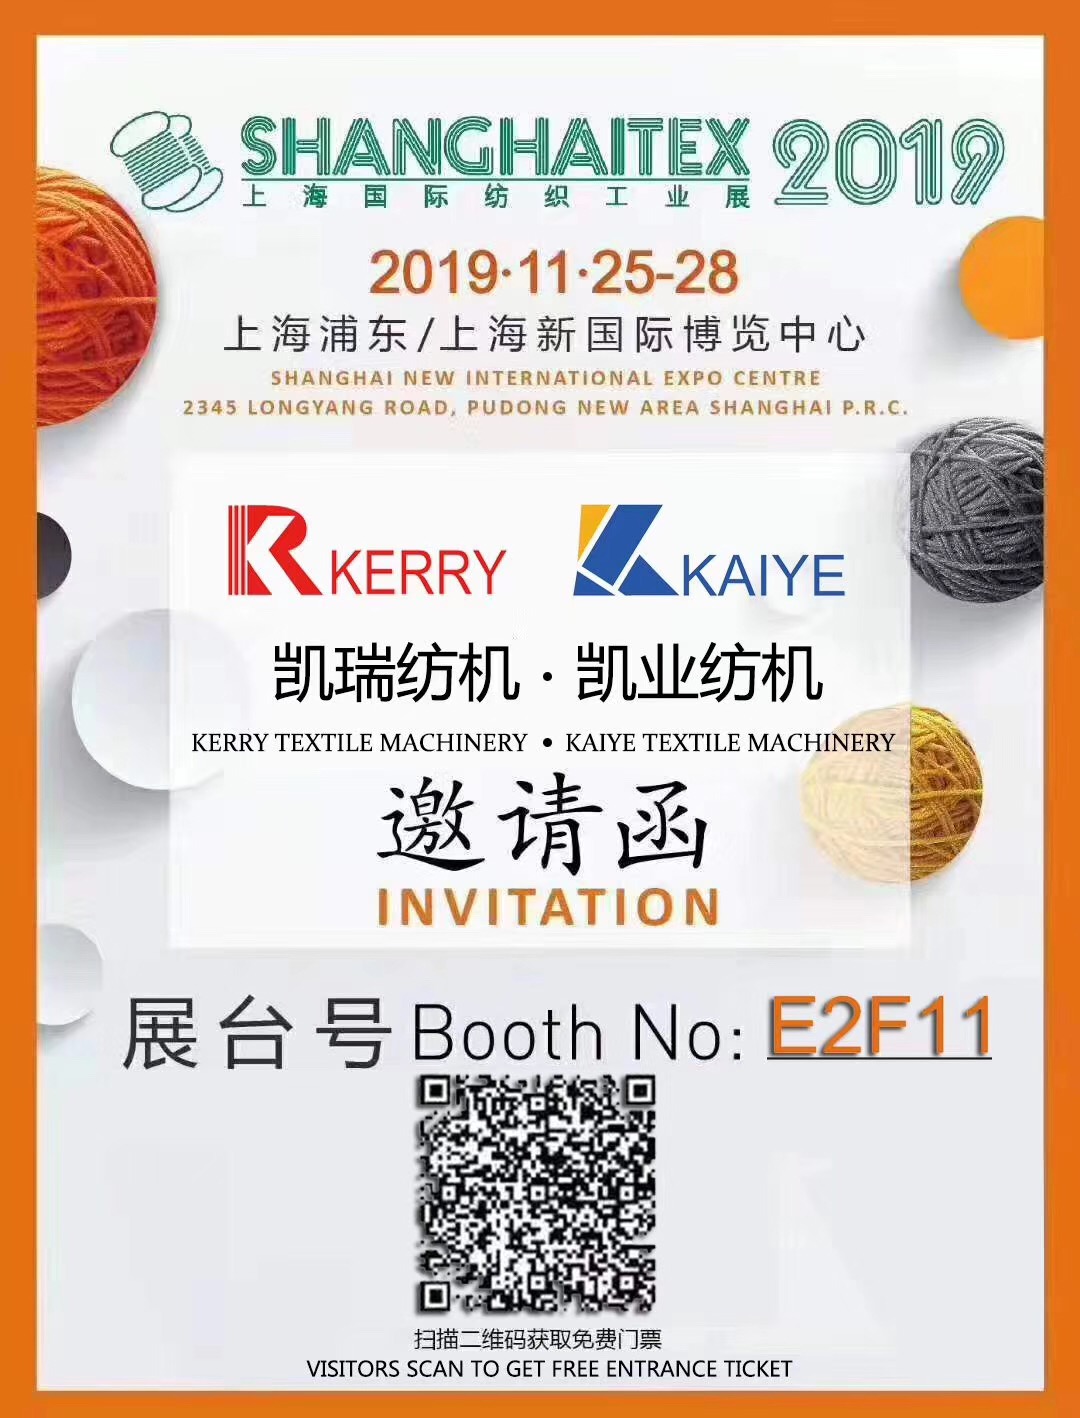 2019年十九届上海国际纺织工业展览会，江阴市凯业纺织机械制造有限公司诚挚邀请您来参观！  展位号：E2F11  时间：2019年11月25日-11月28日  地点：上海新国际展览中心  我们恭候您的到来！